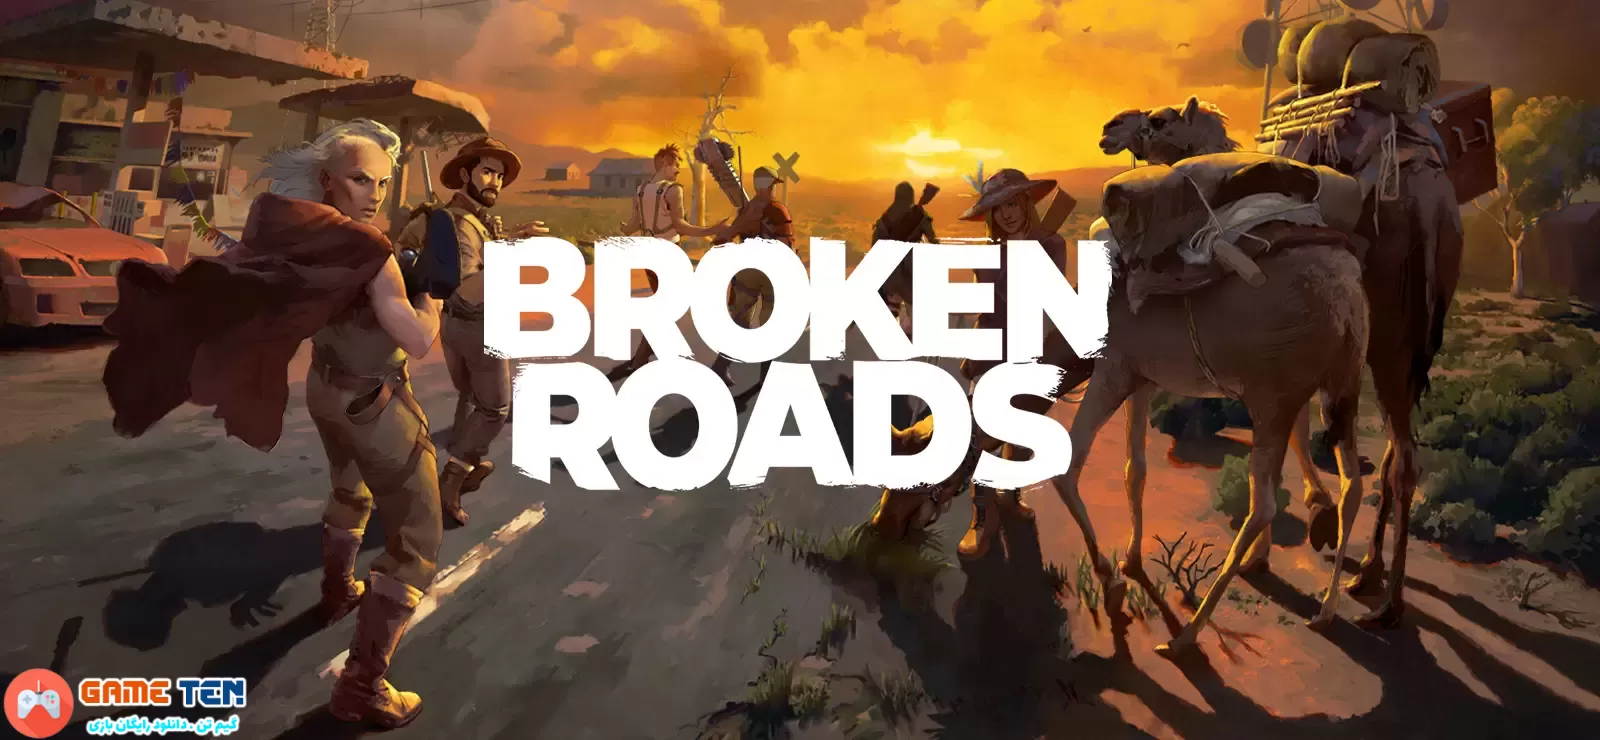 دانلود Broken Roads - بازی جاده های شکسته برای کامپیوتر